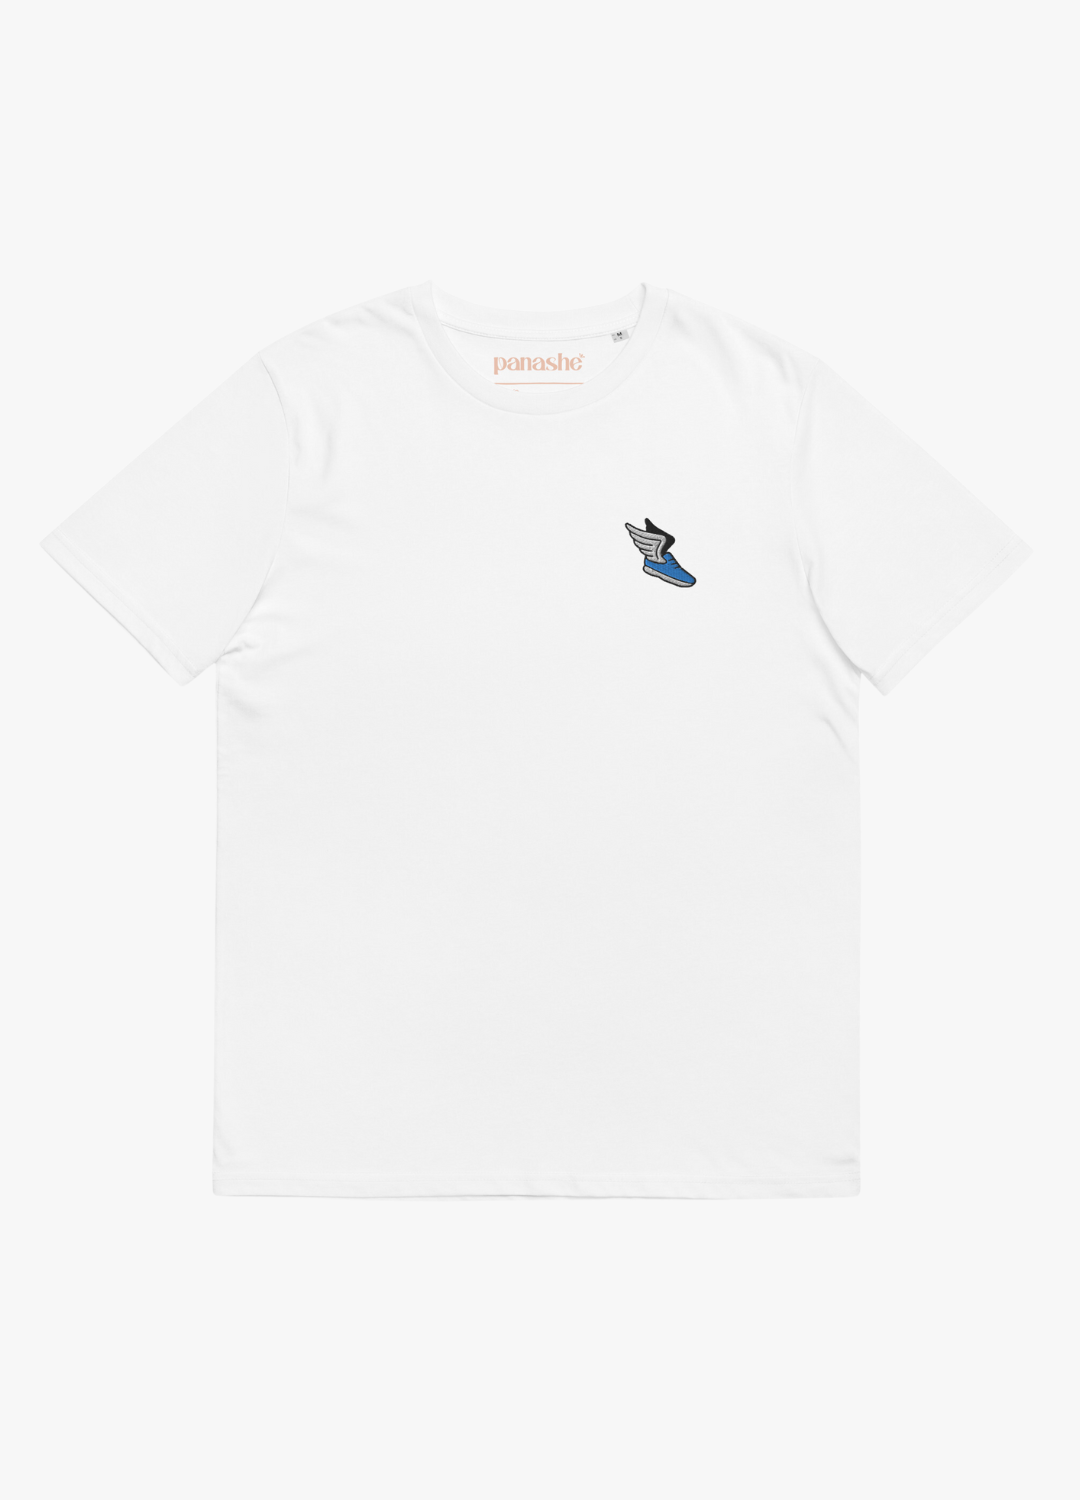 tshirt blanc en coton biologique et vegan avec broderie chaussure ailée bleue et phrase humoristique à l'arrière slow streetwear fashion